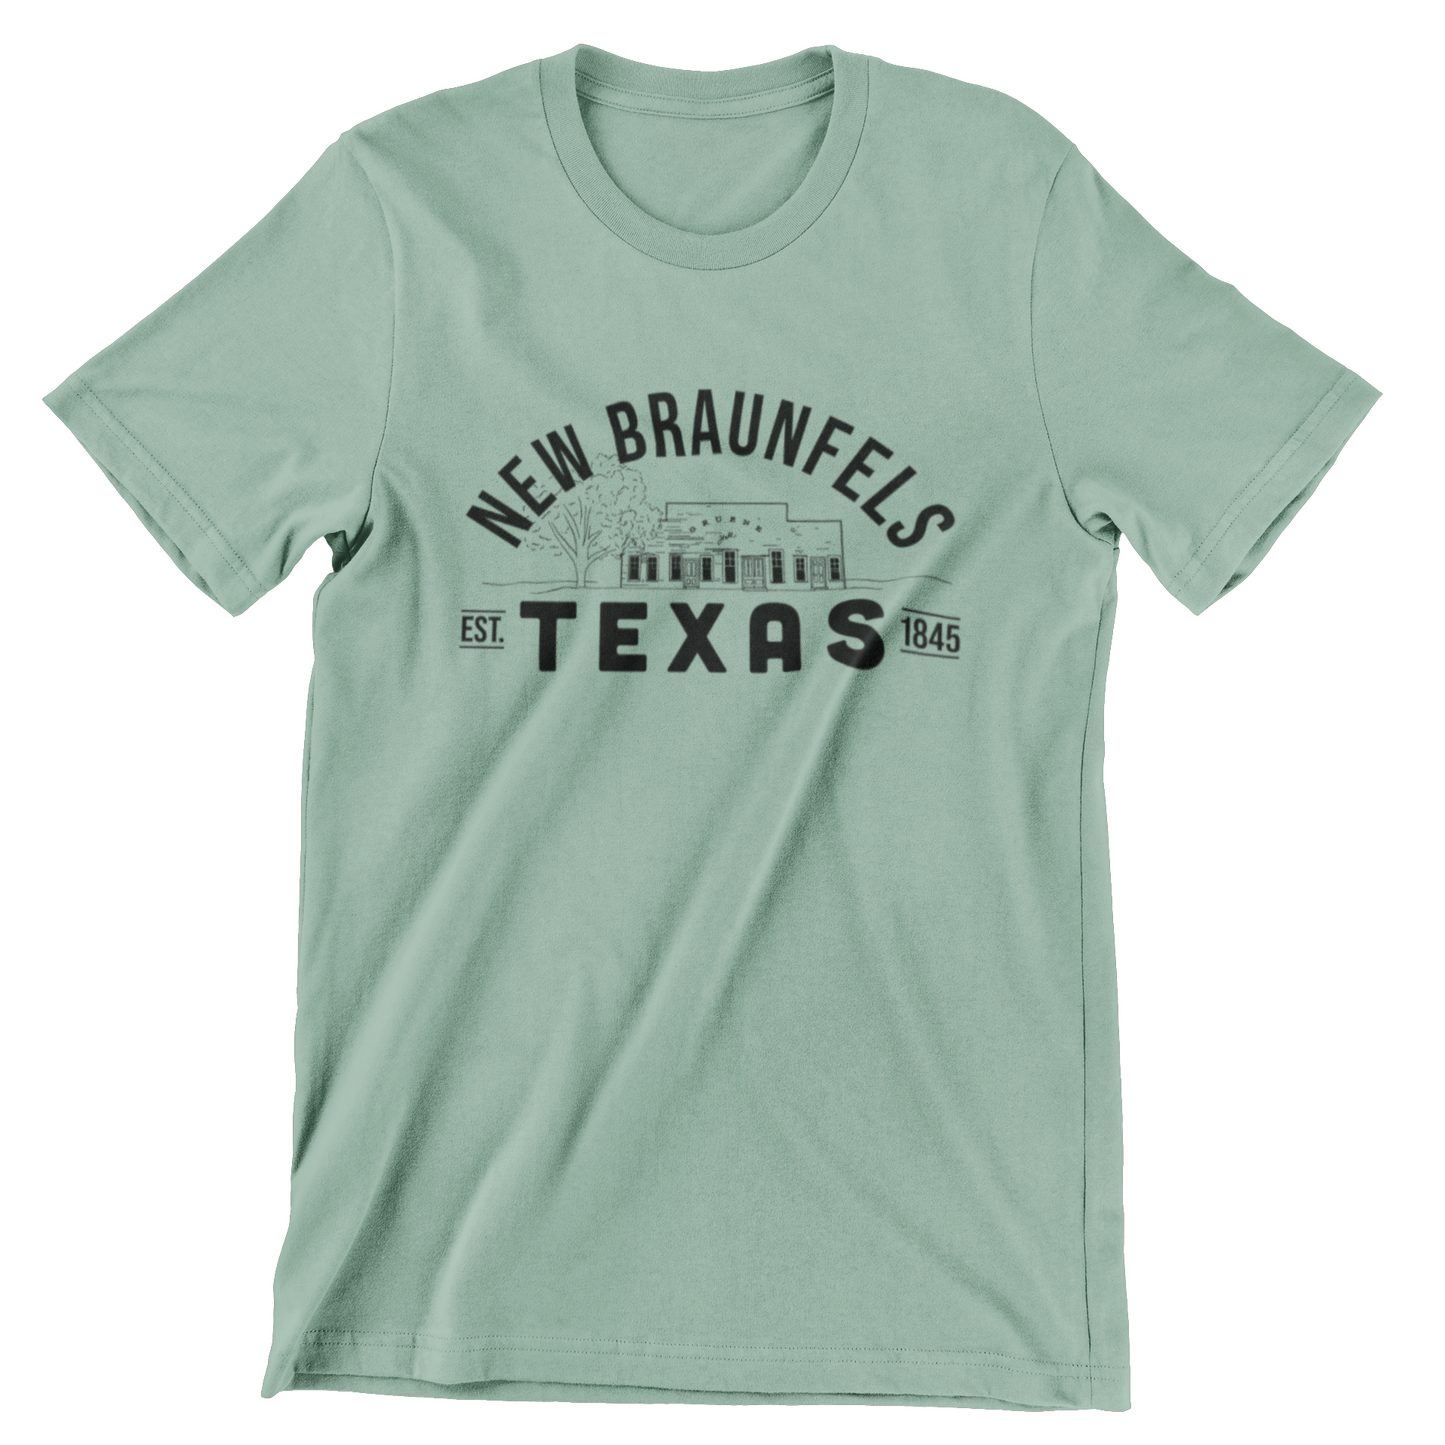 New Braunfels Texas T-shirt